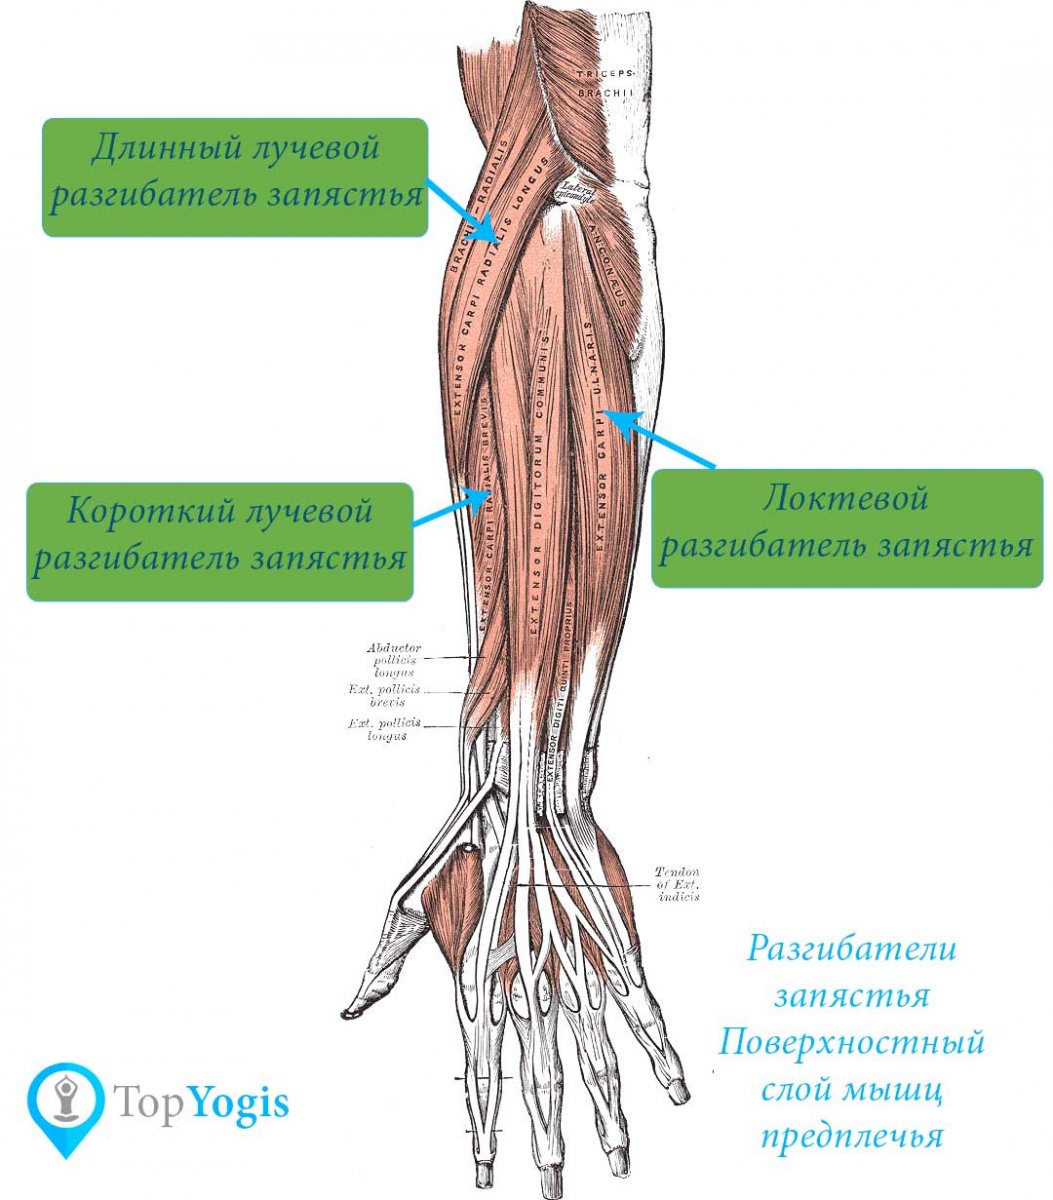 Мышцы предплечья руки человека анатомия